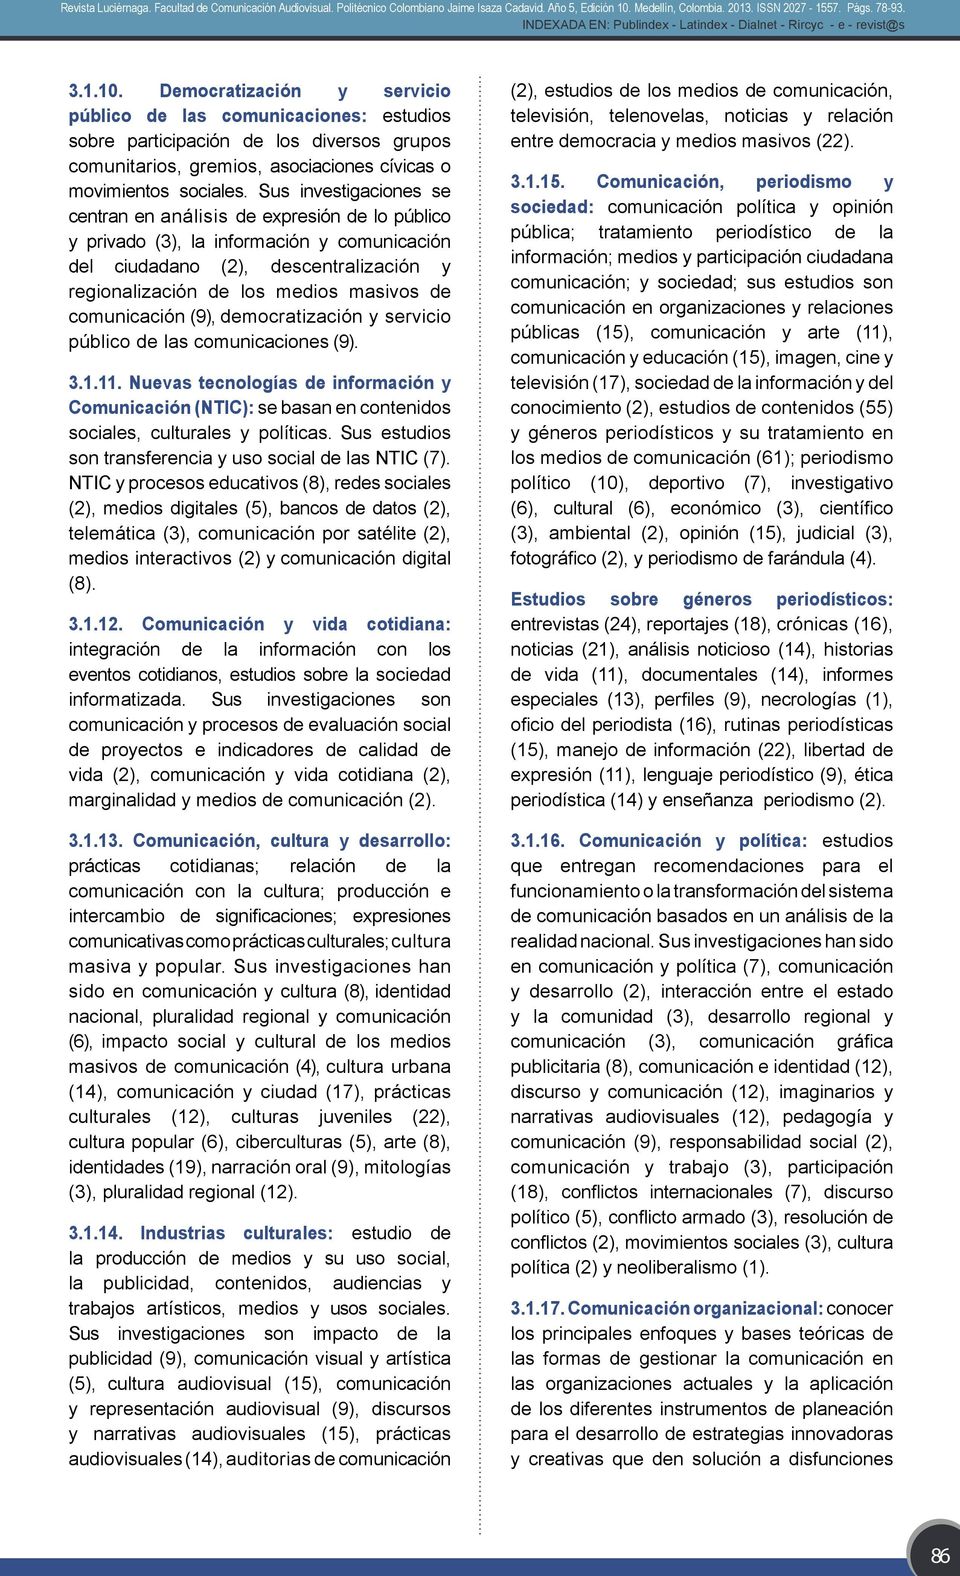 comunicación (9), democratización y servicio público de las comunicaciones (9). 3.1.11.